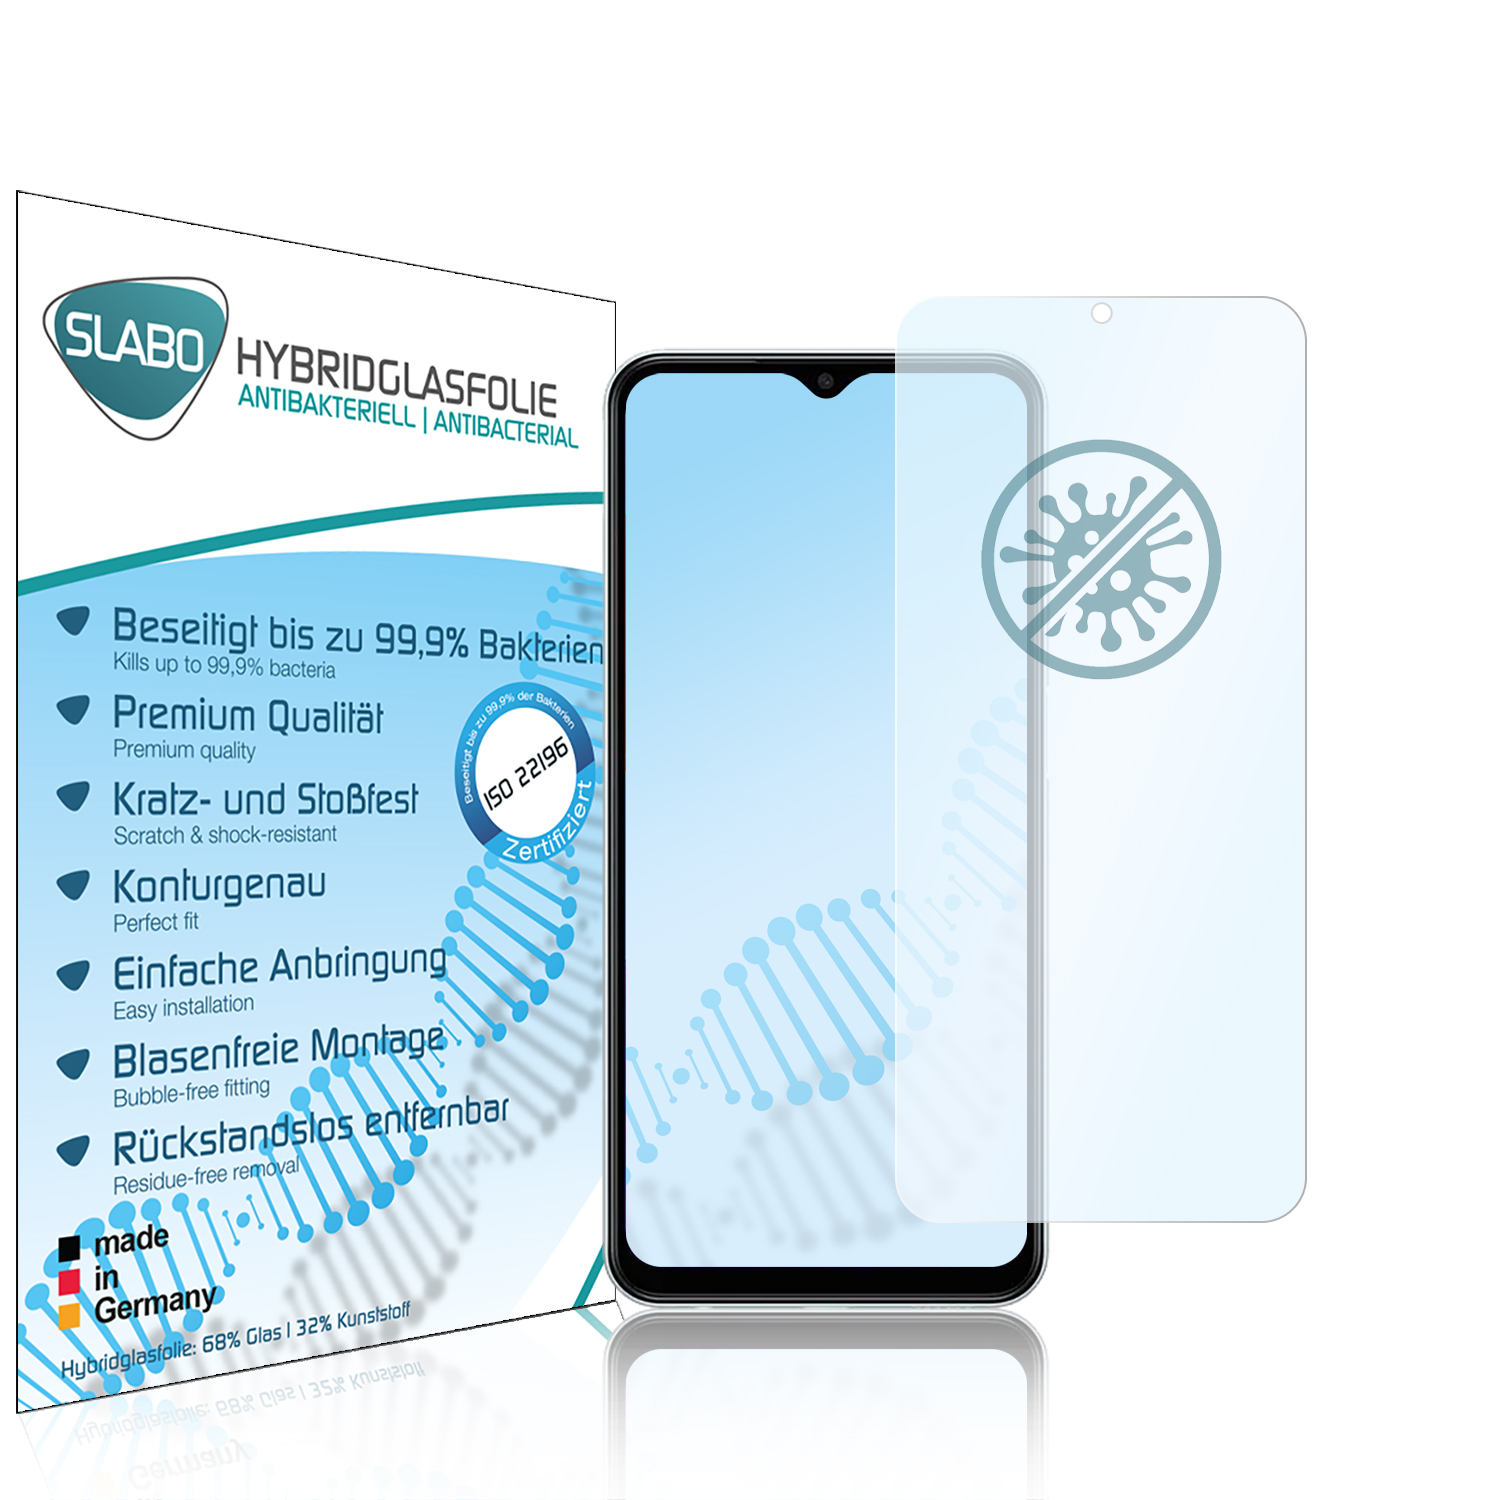 SLABO antibakteriell flexibles Samsung M13 4G) Hybridglas Displayschutz(für Samsung Galaxy